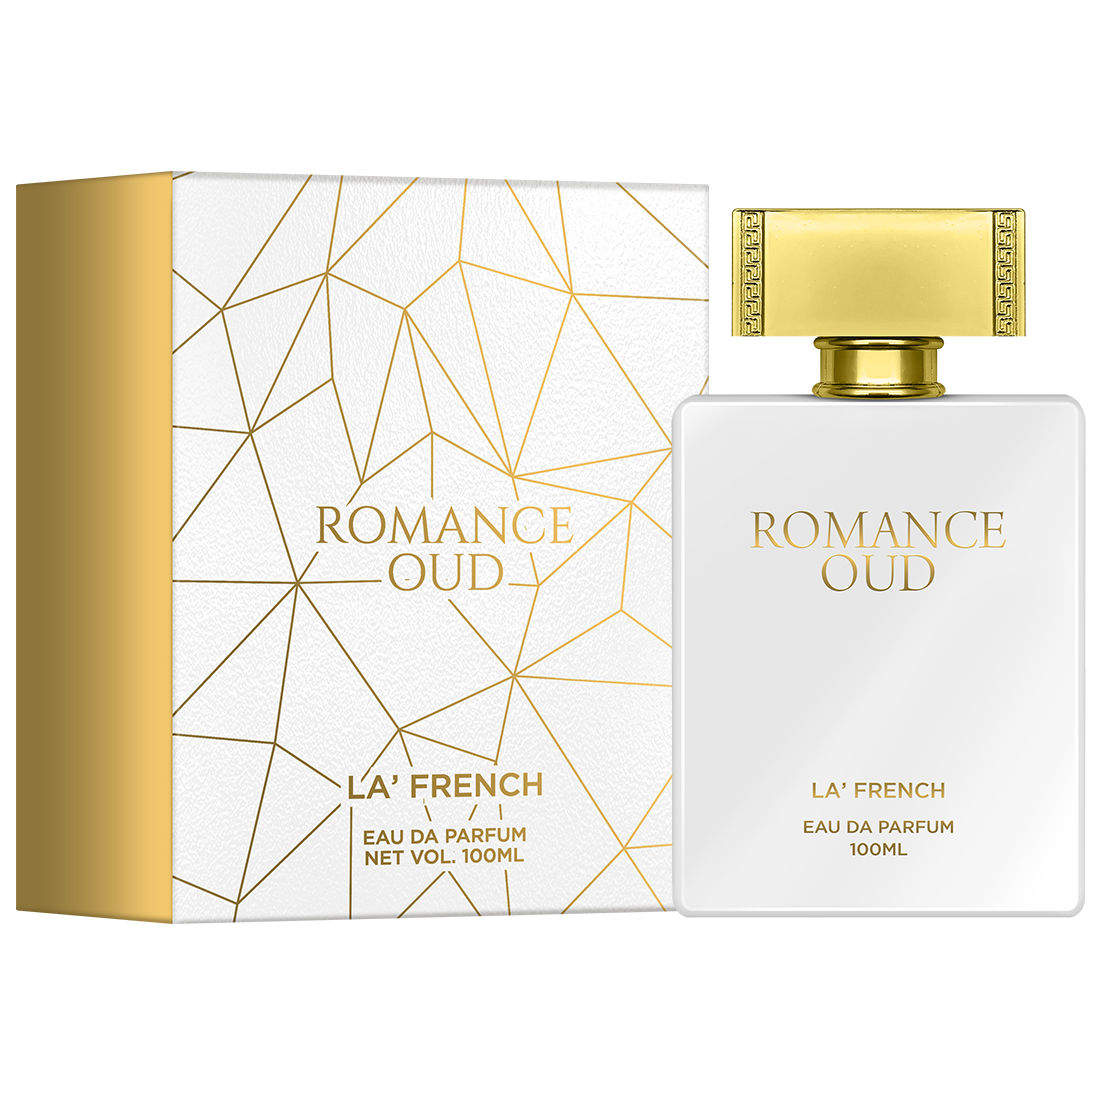 La French Romance Oud Eau De Parfum